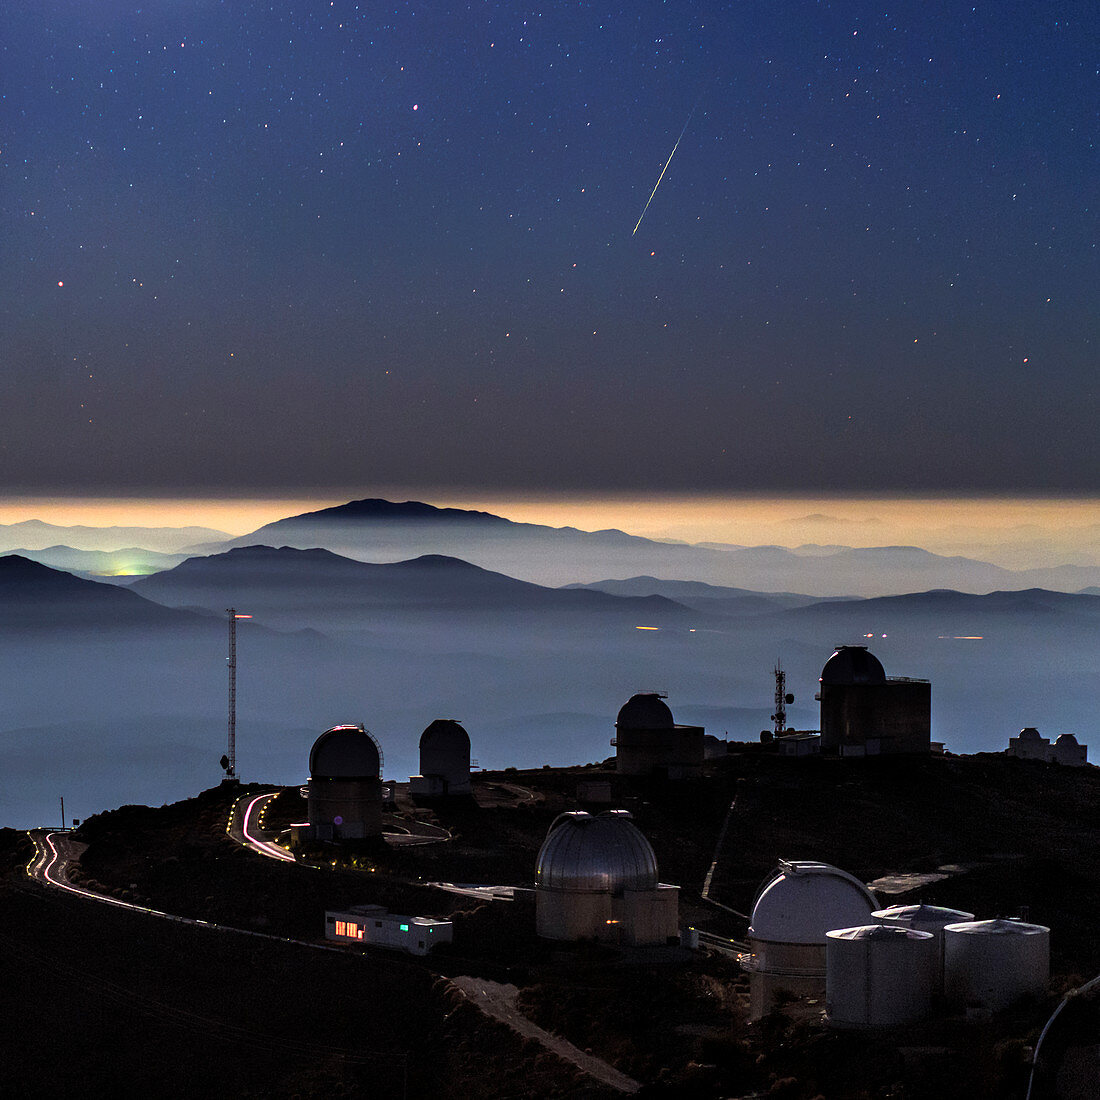 Meteor over La Silla Observatory,Chile